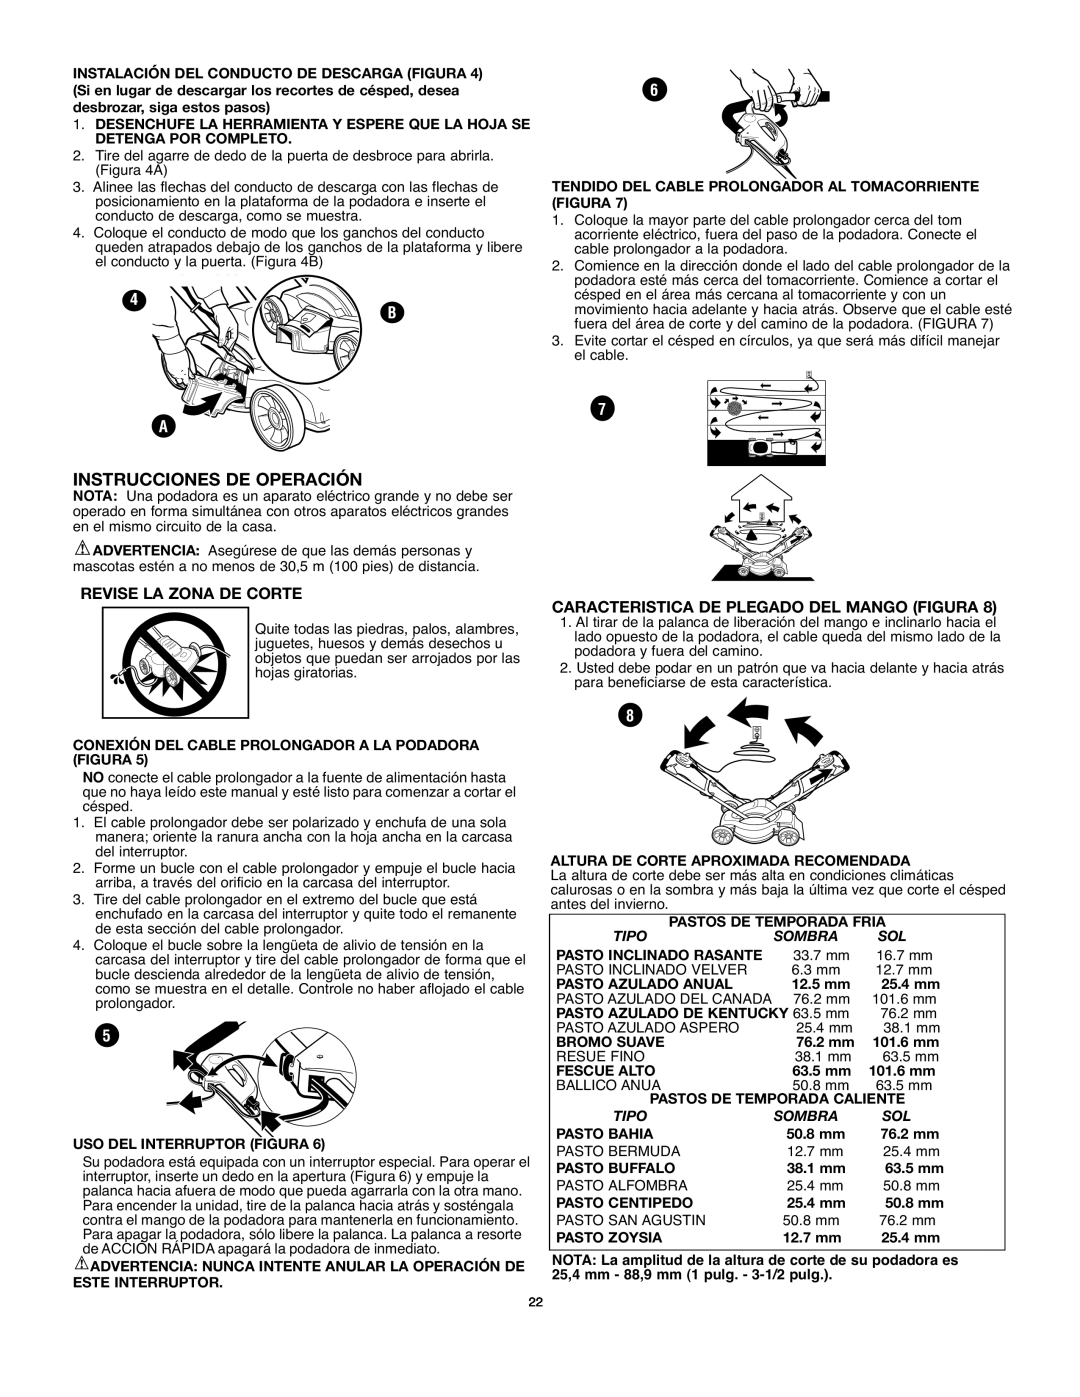 Black & Decker MM675 Instrucciones De Operación, Revise La Zona De Corte, Caracteristica De Plegado Del Mango Figura 